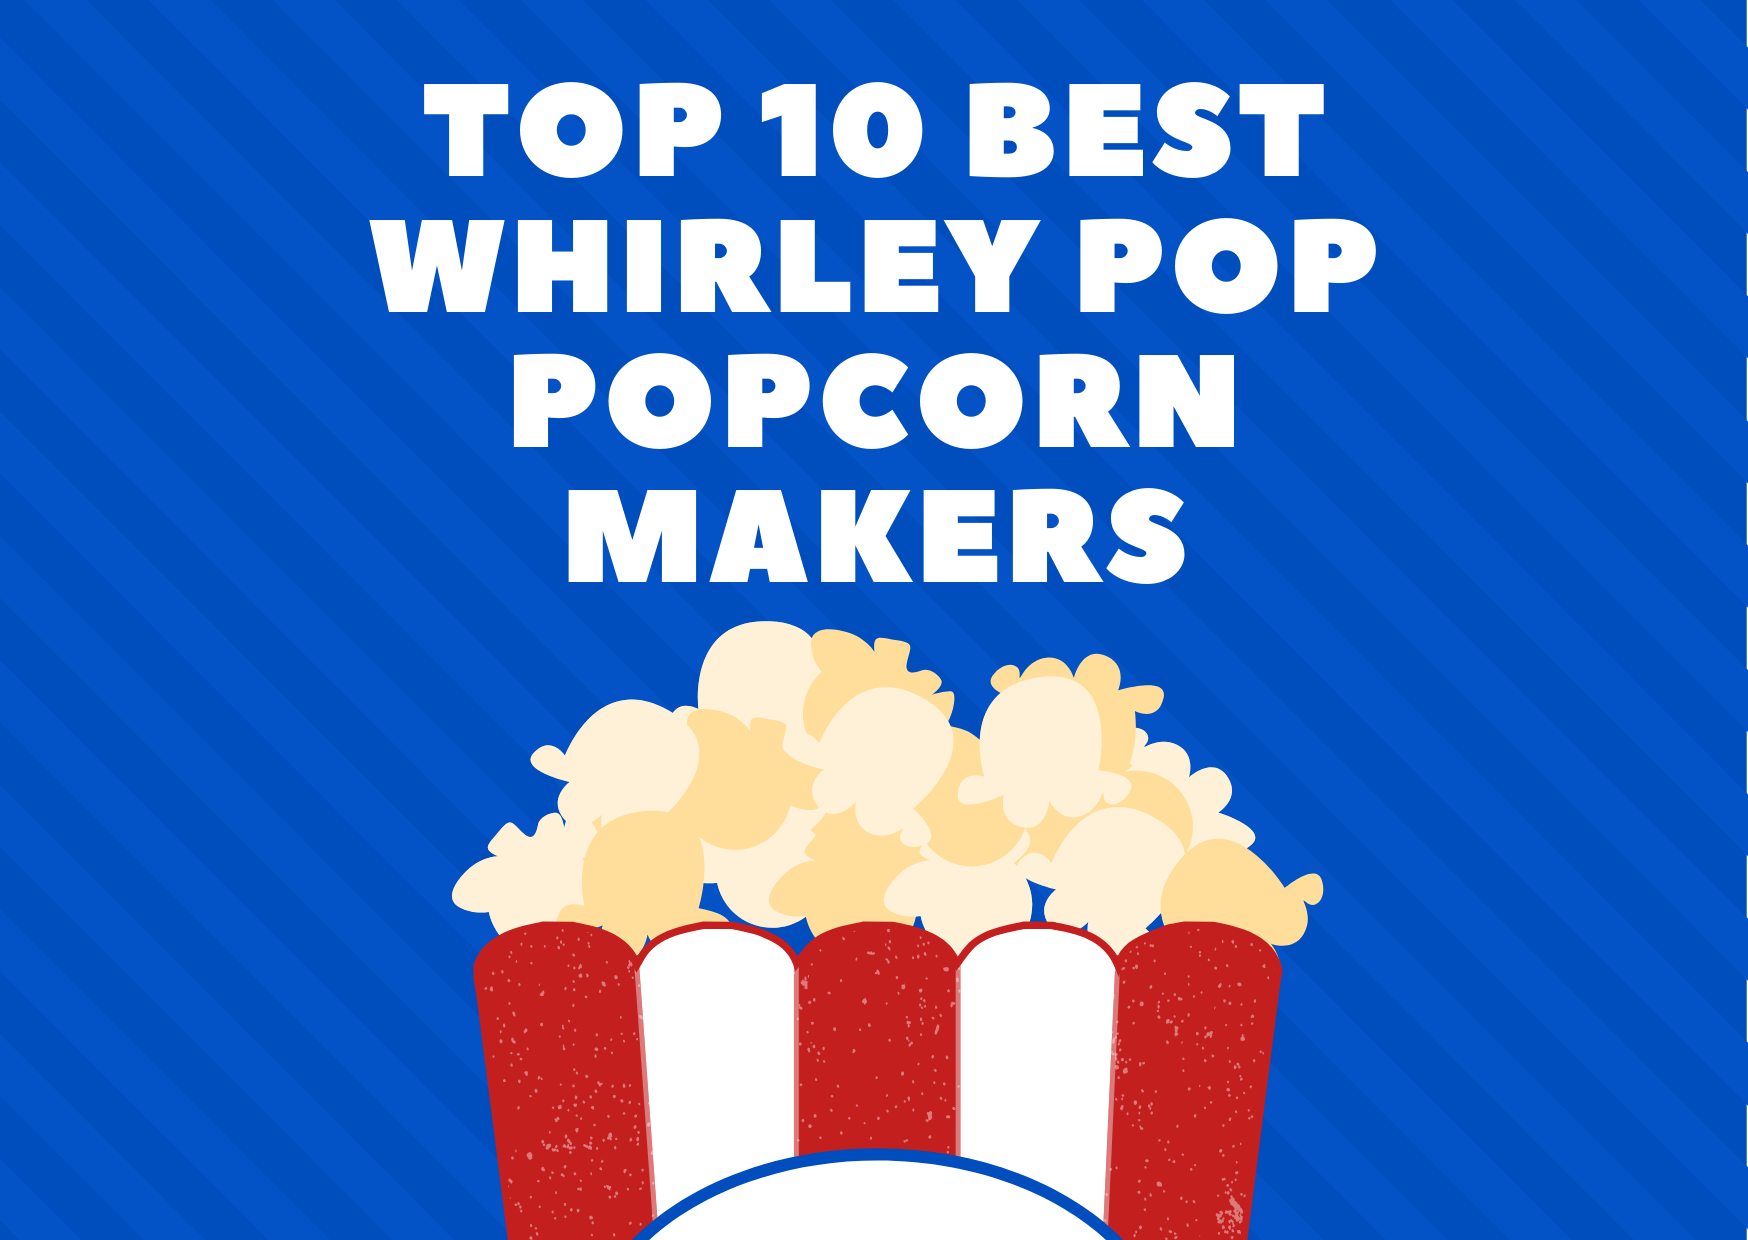 Top 10 Best Whirley Pop Popcorn Makers